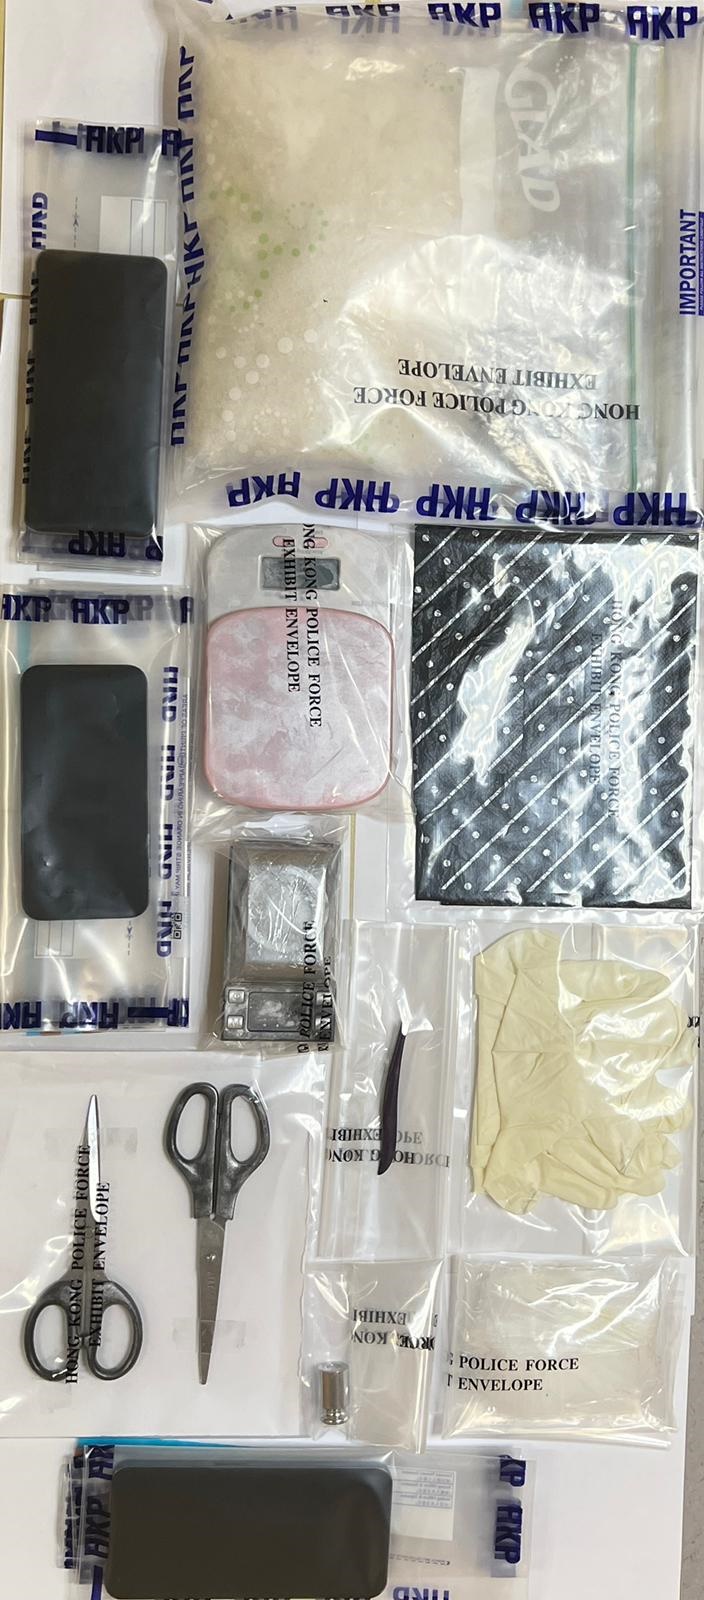 警方所搜获的冰毒及一批毒品包装工具。